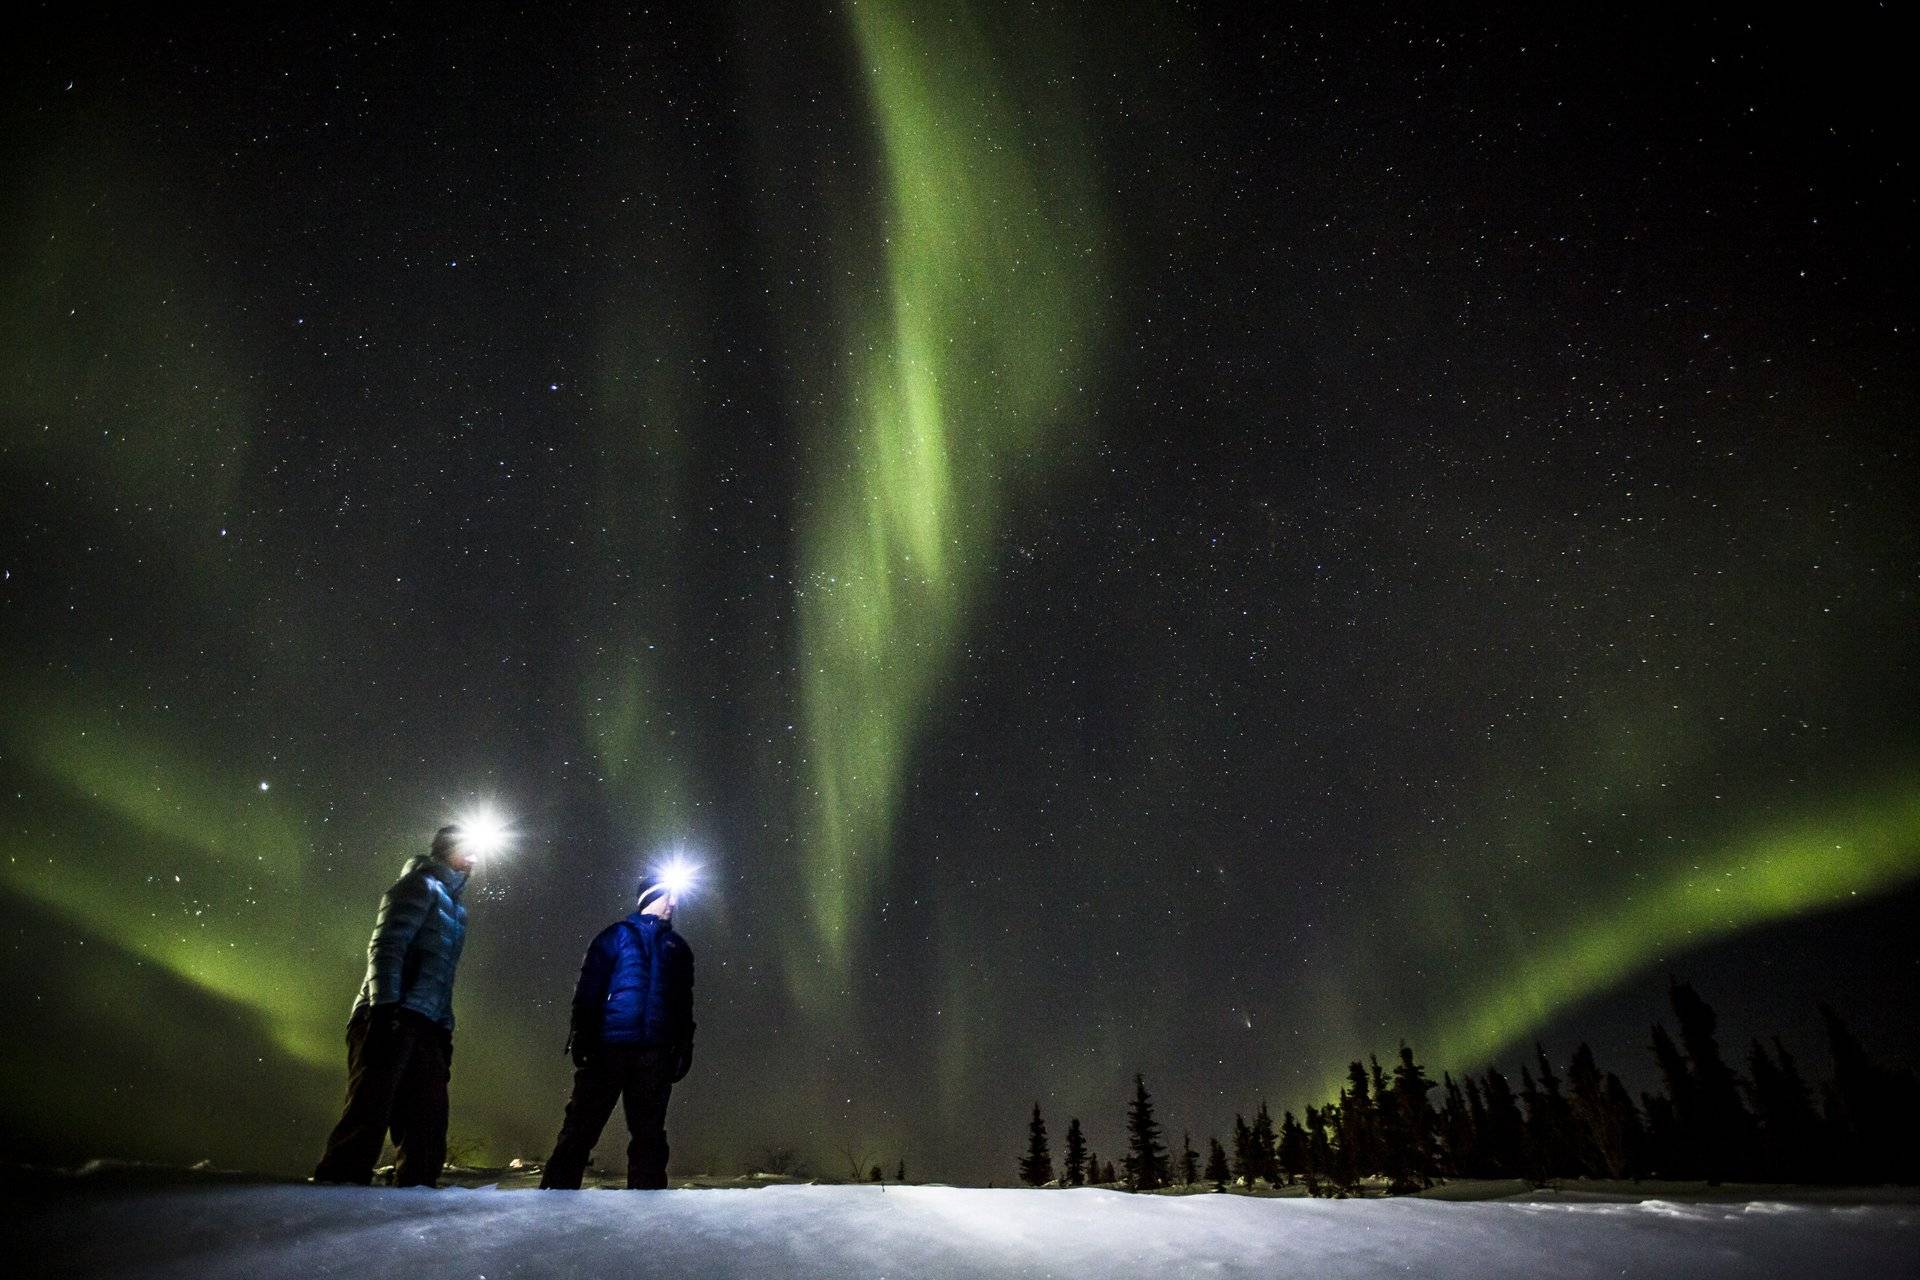 加拿大旅游局亚太区总经理：冰雪旅游将成为冬季旅游发展的新风向 |专访